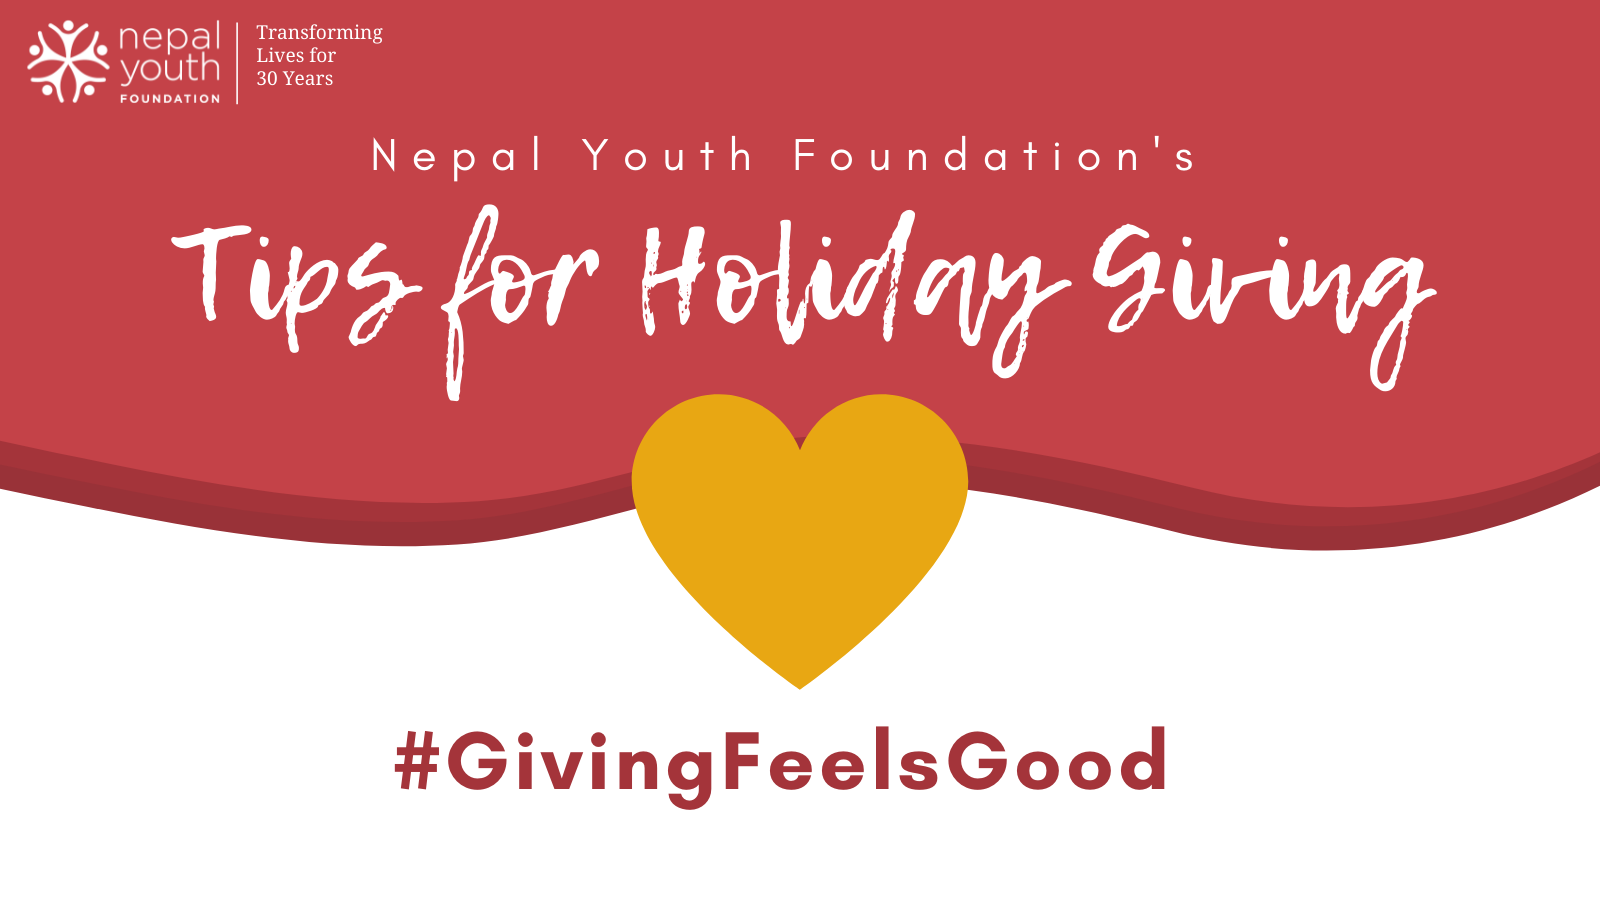 #GivingFeelsGood: Tips for Holiday Giving